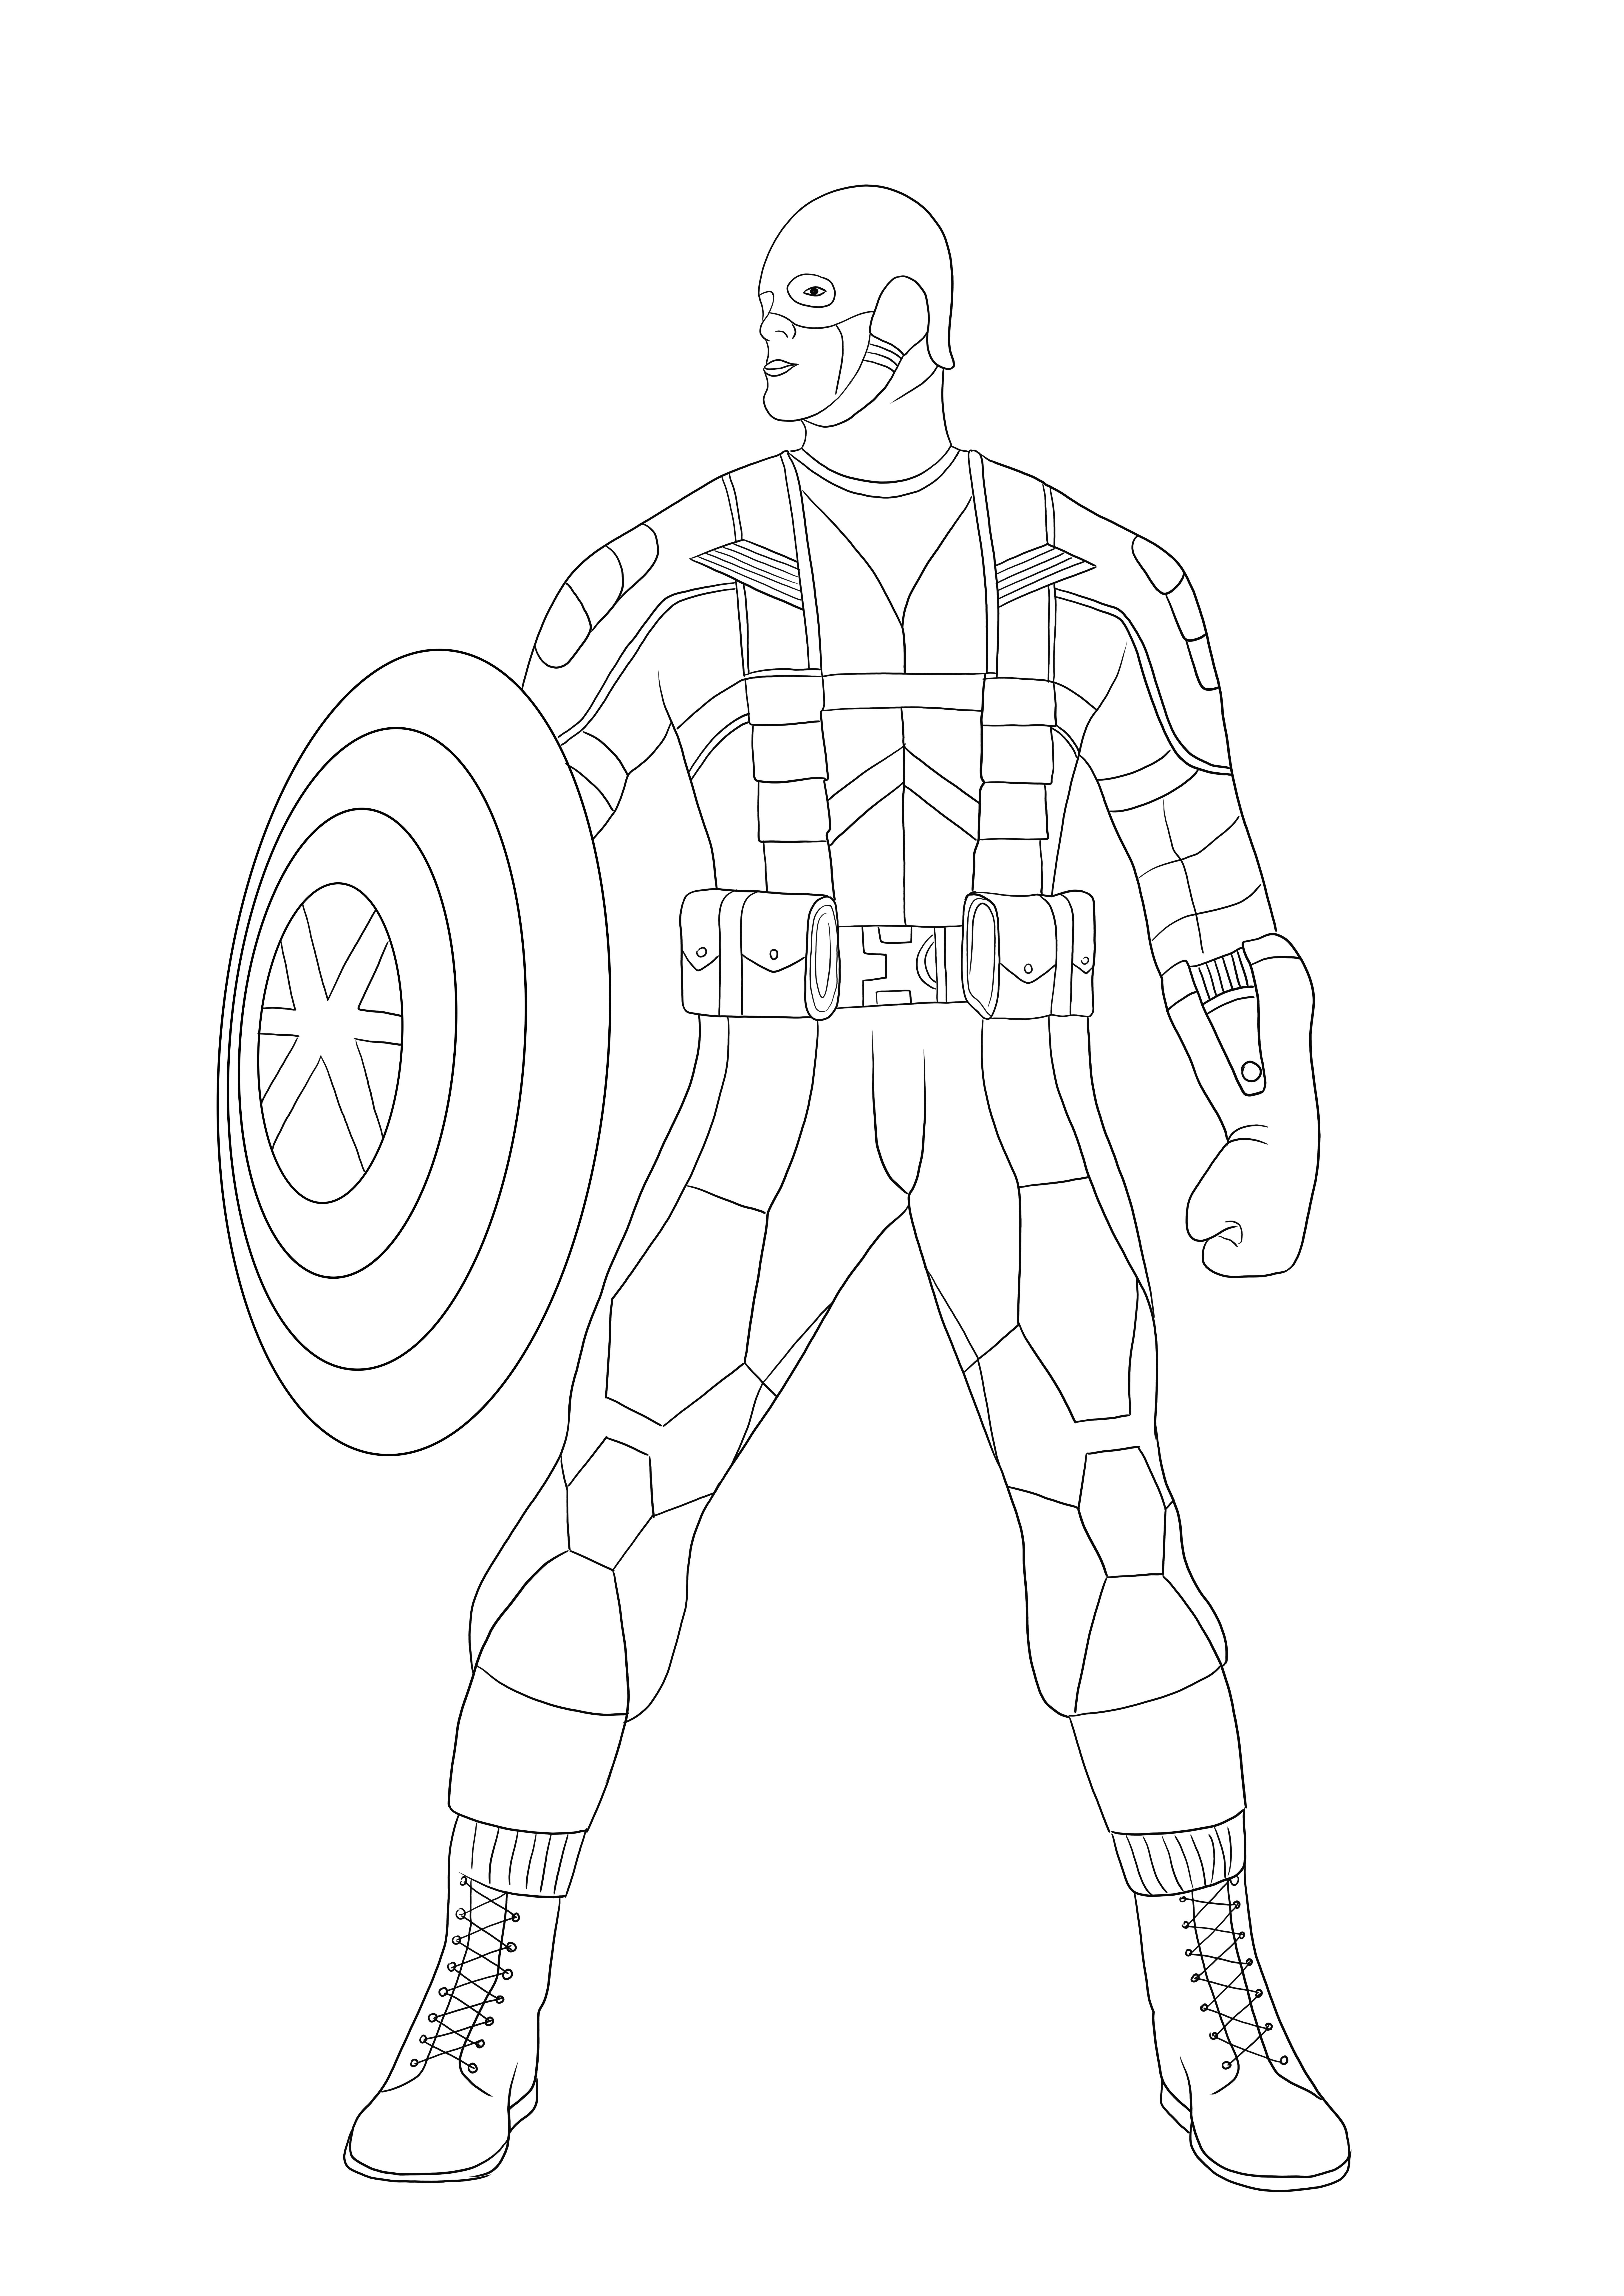 Captain America prêt à se battre image téléchargeable gratuitement facile à colorier